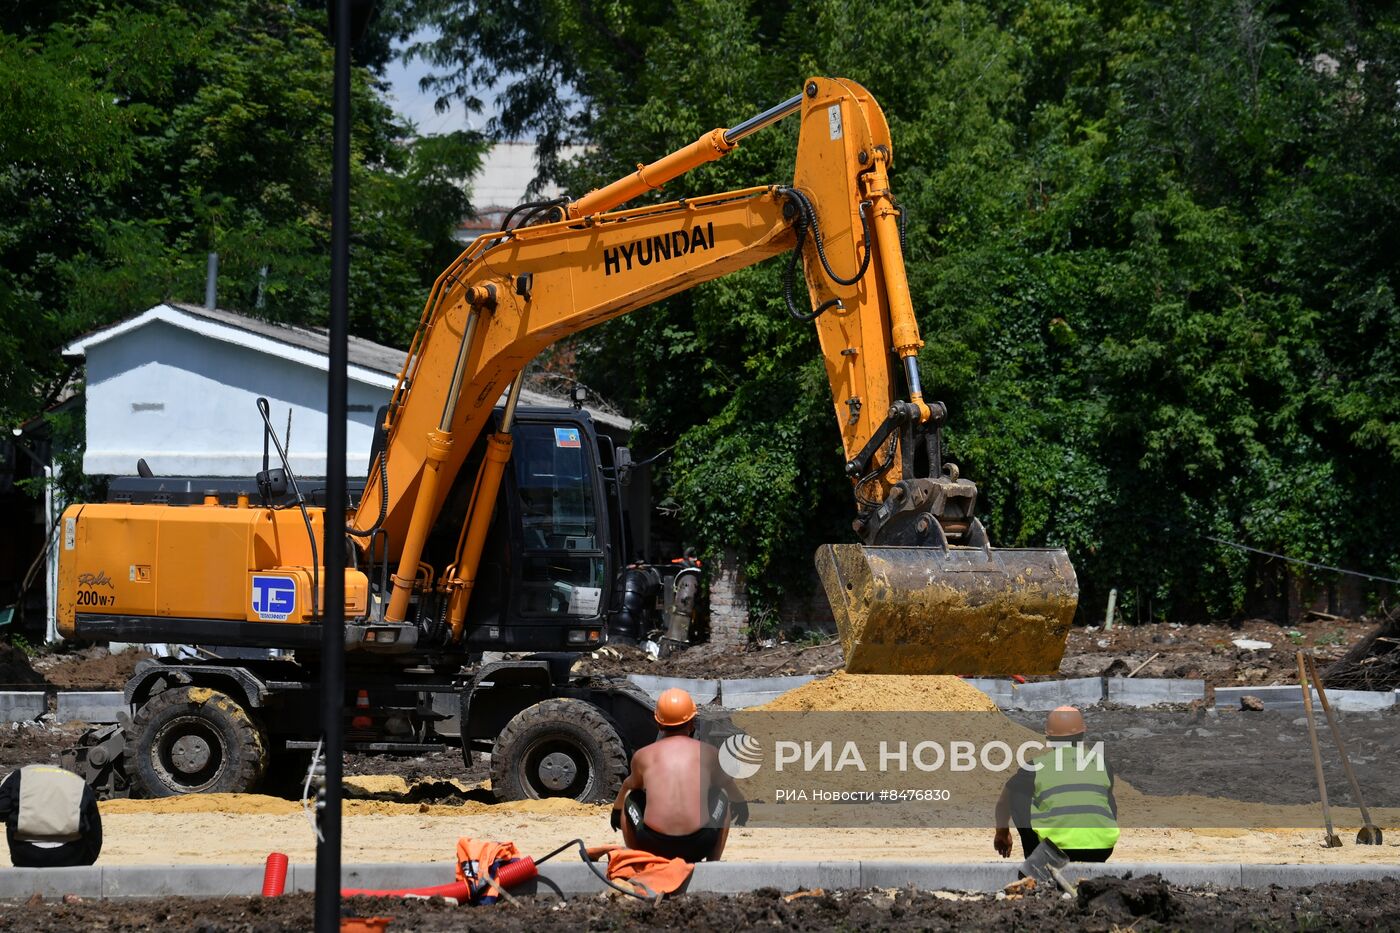 Реконструкция сквера Молодой гвардии в Луганске